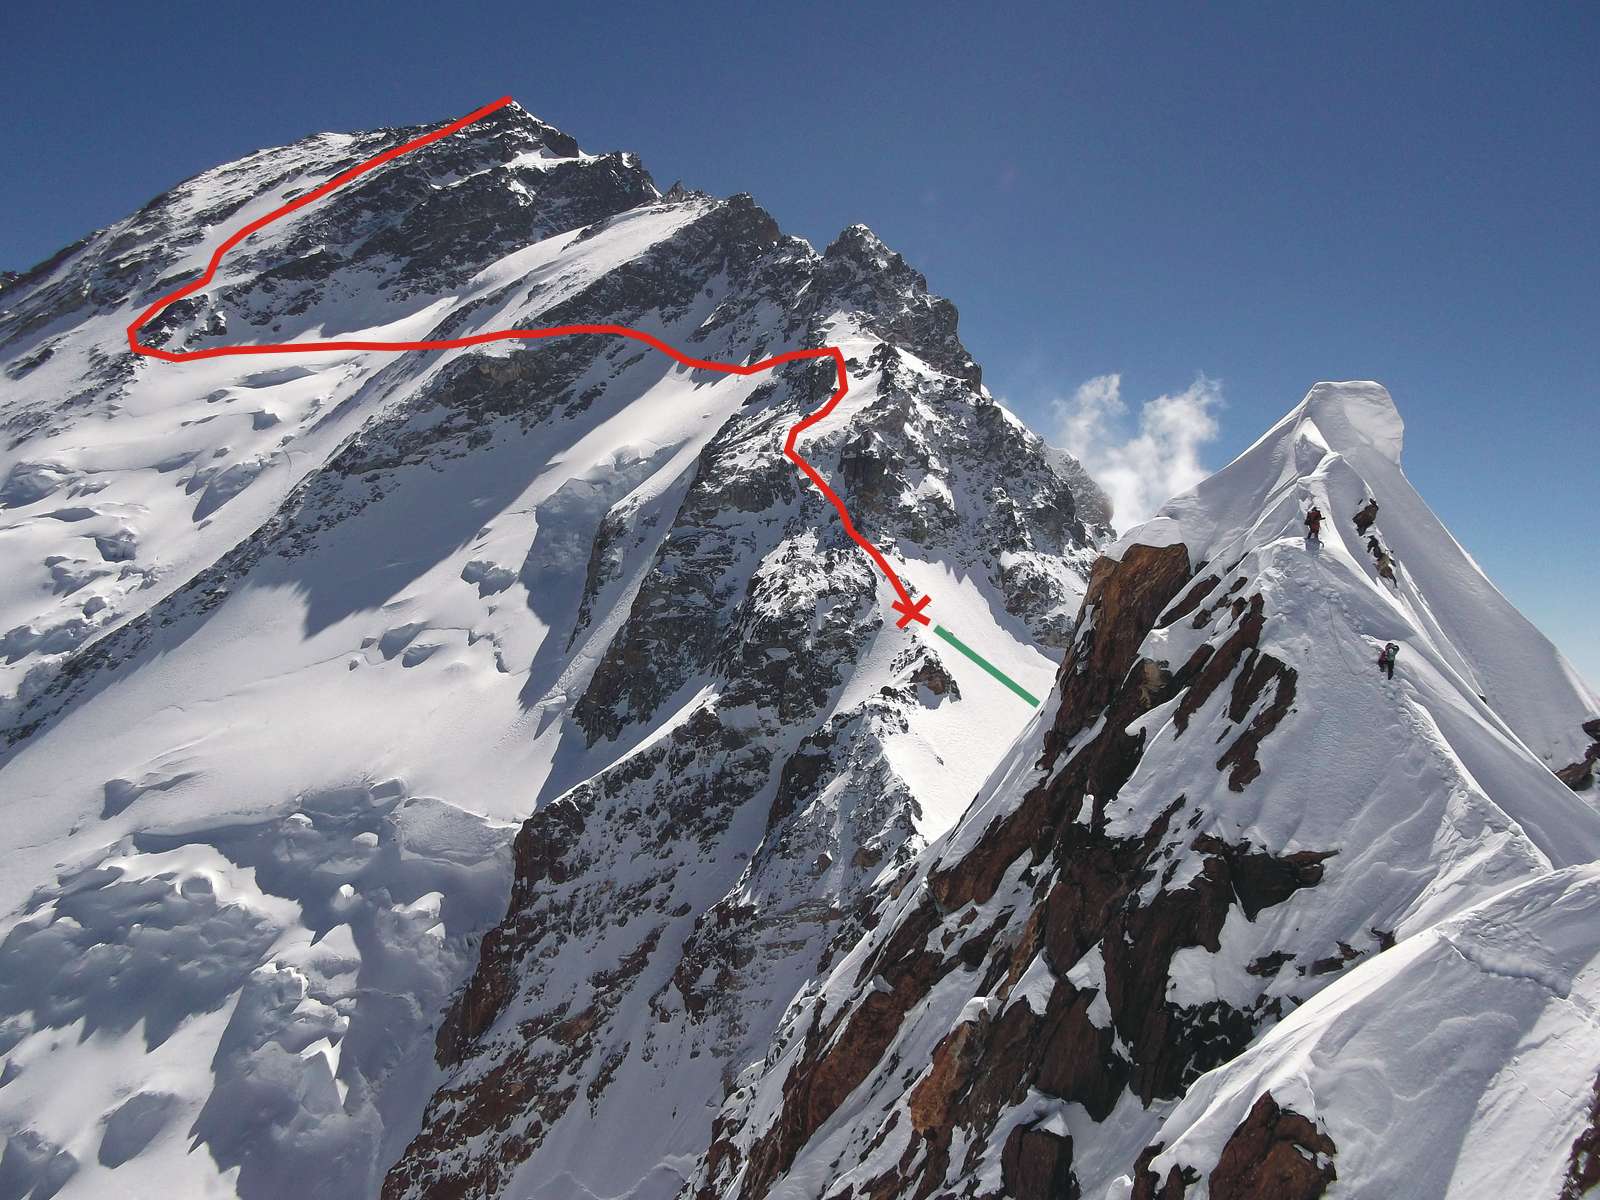  аксимальная высота, на которую взошли зимой 2014 года альпинисты Дэвид Геттлет и Томаш Мацкевич составила 7200 метров: точка отмеченная на фото крестом. Красная линия - дальнейший путь к вершине, по которому альпинисты планировали подниматься